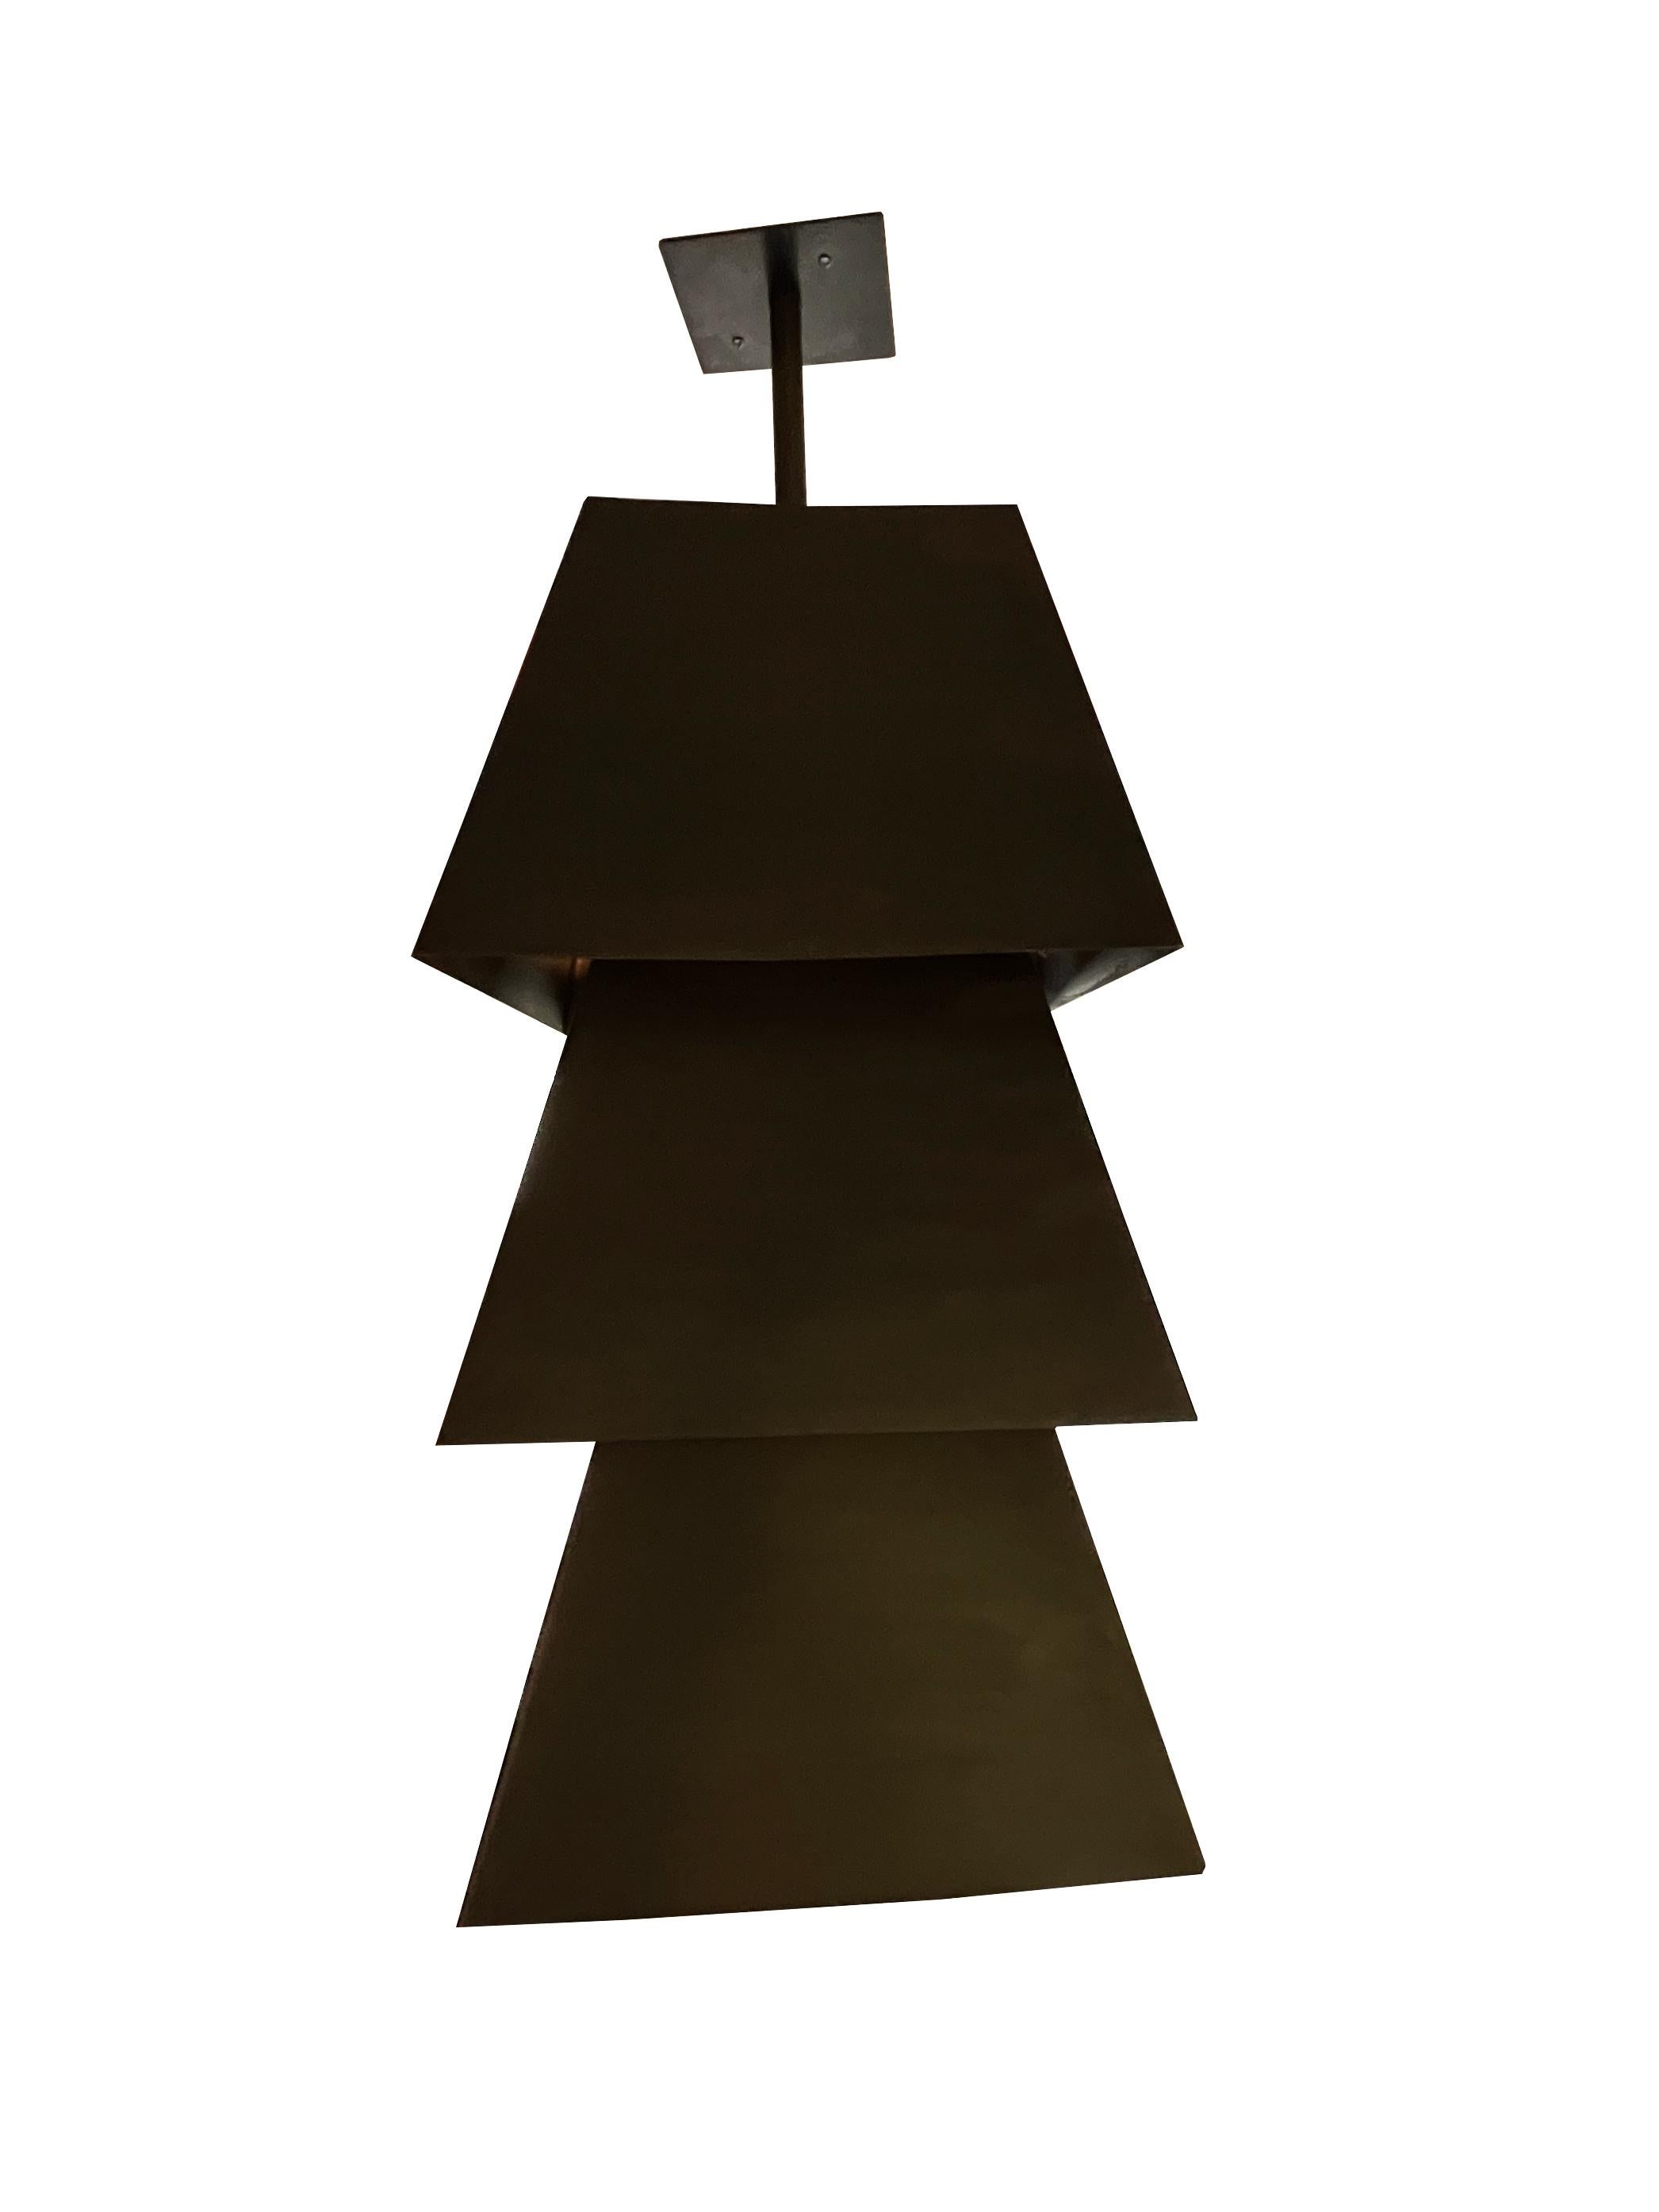 Volumetrisch gestapelte trapezförmige Deckenleuchte aus schwarzem Stahl von Juan Montoya Design. Diese Deckenleuchte lässt das Licht durch 3 Öffnungen scheinen, was sie nicht nur funktional, sondern auch zu einer skulpturalen Leuchte macht. Diese